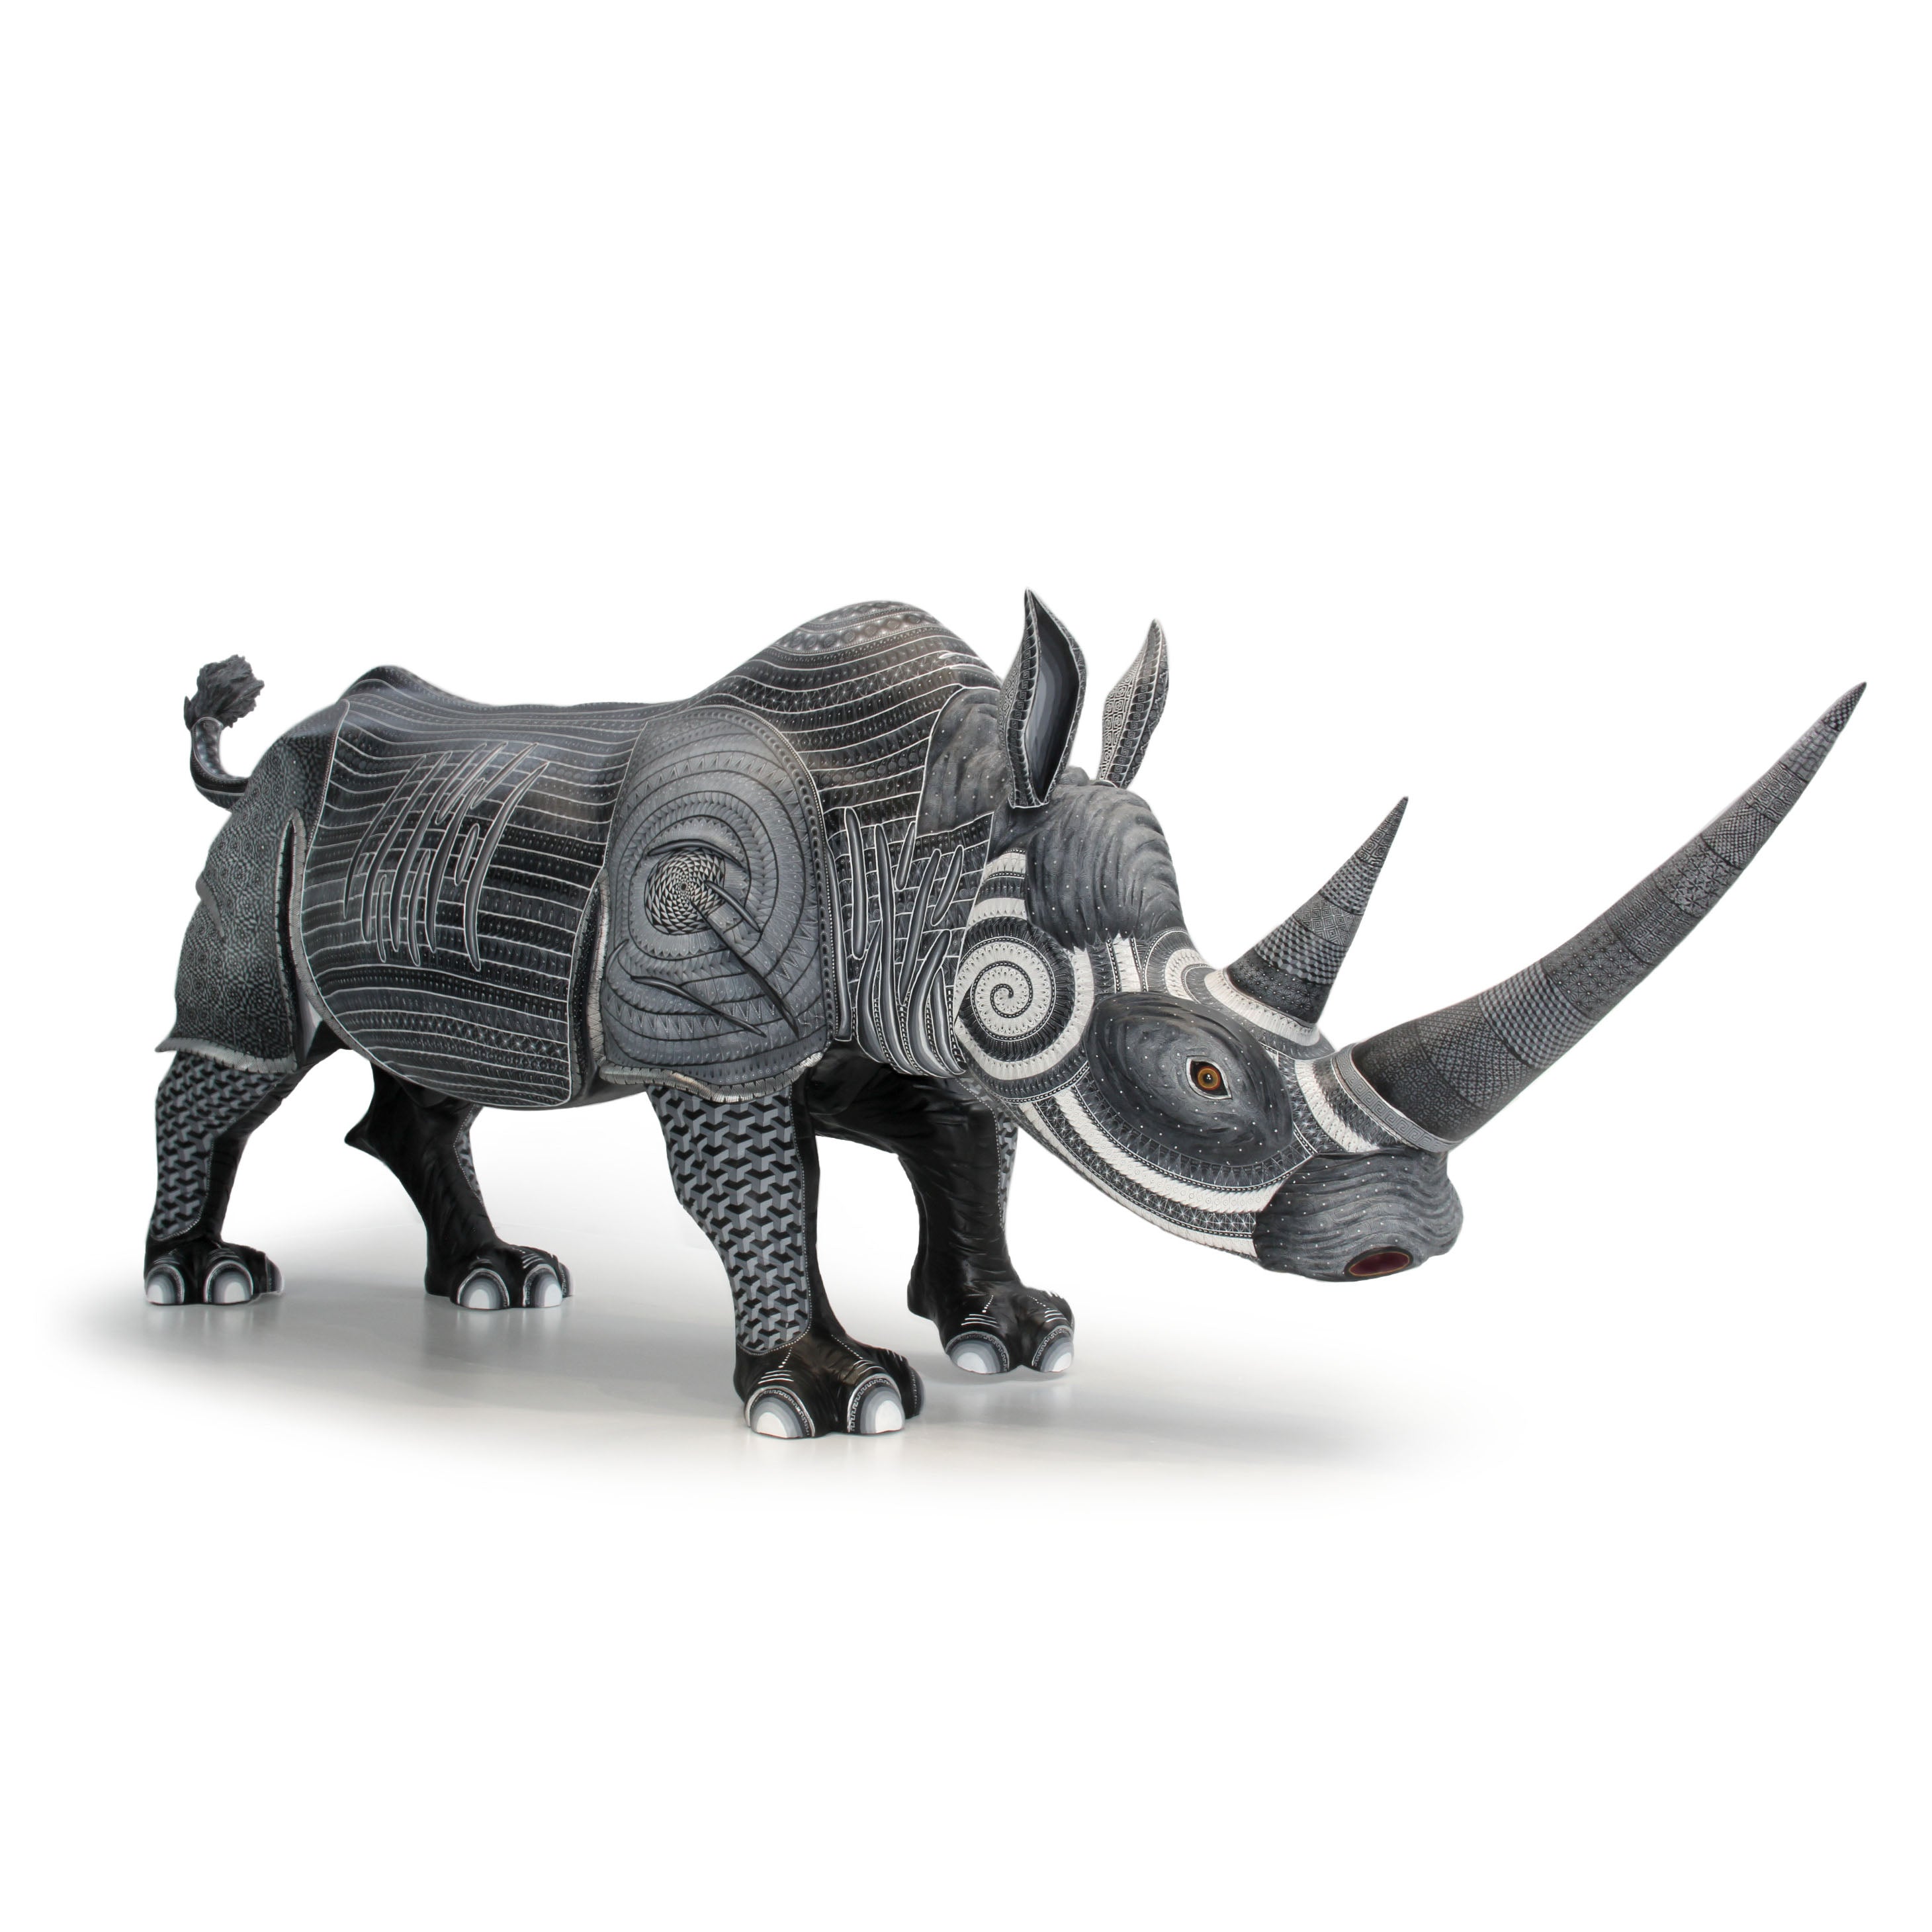 Rinoceronte blanco y negro grises alebrije hecho a mano arte mexicano fino